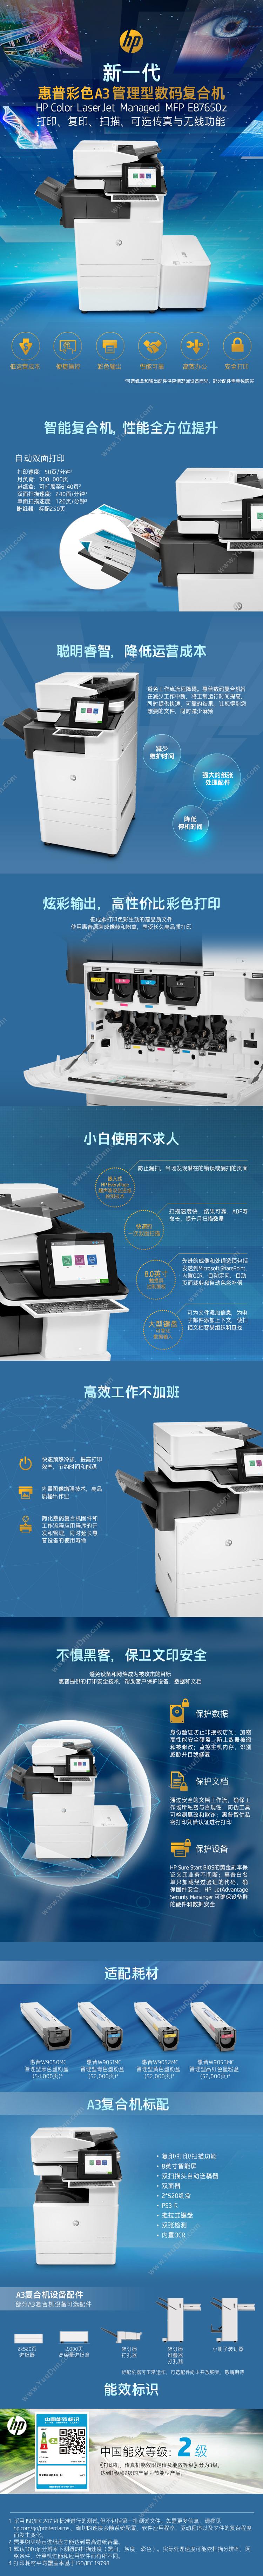 惠普 HP A3X3A89AE87650z(带服务) 激光复合打印机